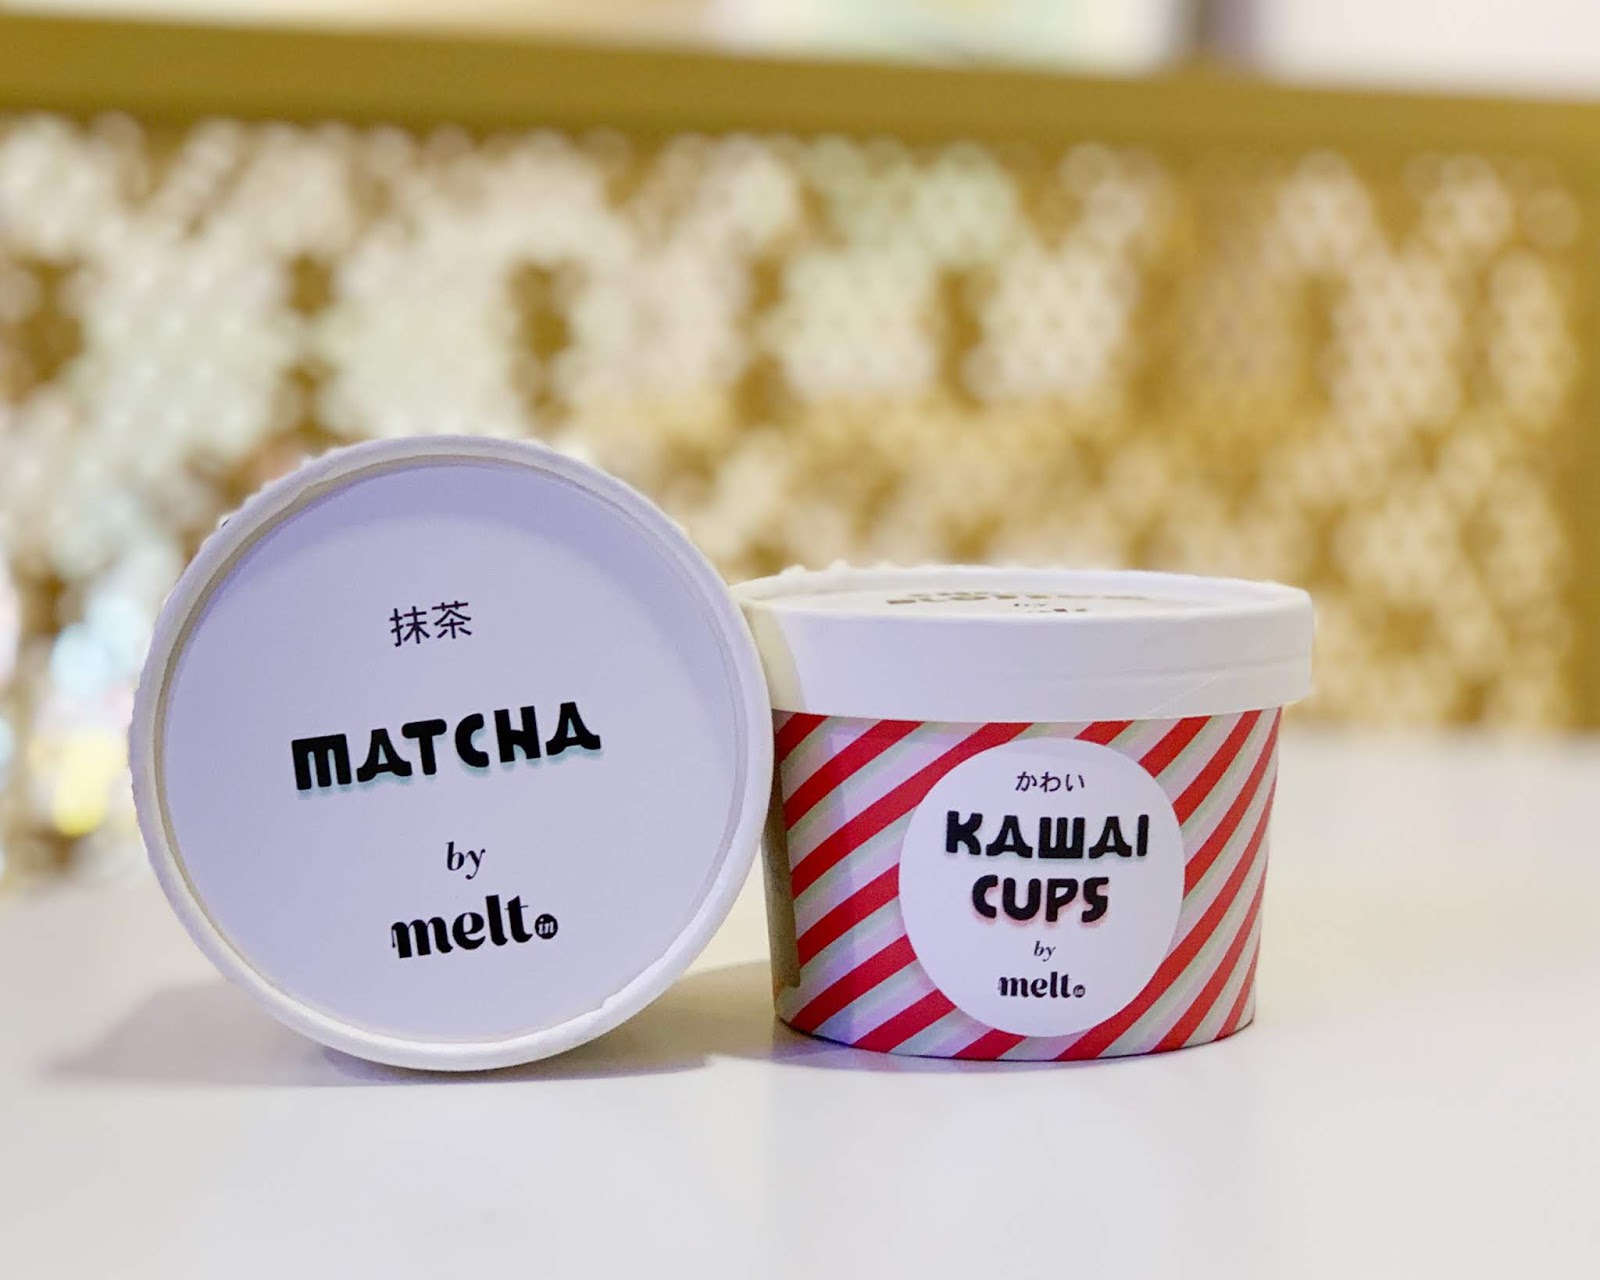 日式风格的Kawai Cups冻酸奶包装设计